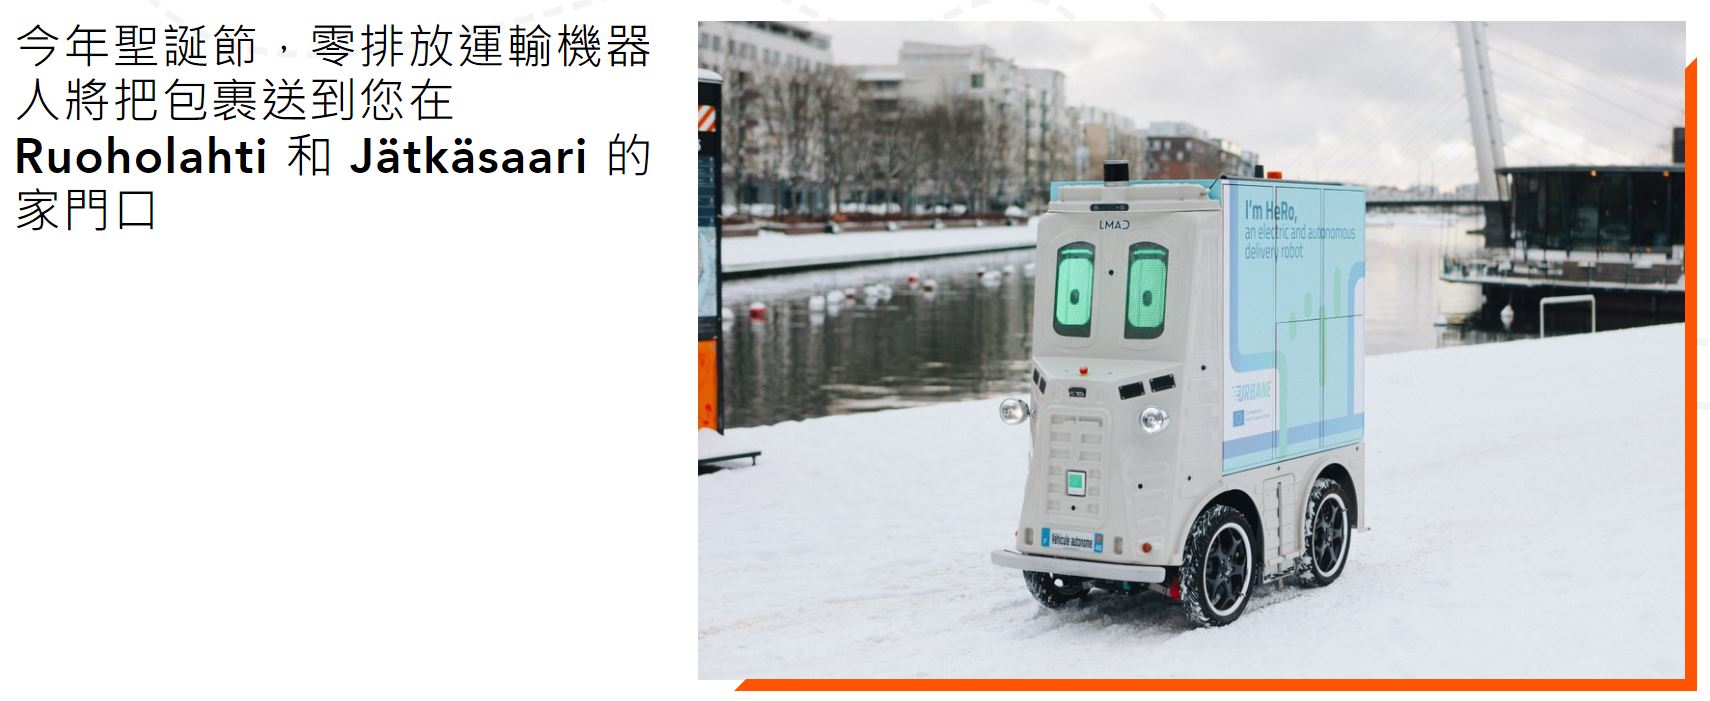 芬蘭正在試驗自主運送機器人 HeRo 希望能夠改善物流的最後一哩路 - 電腦王阿達